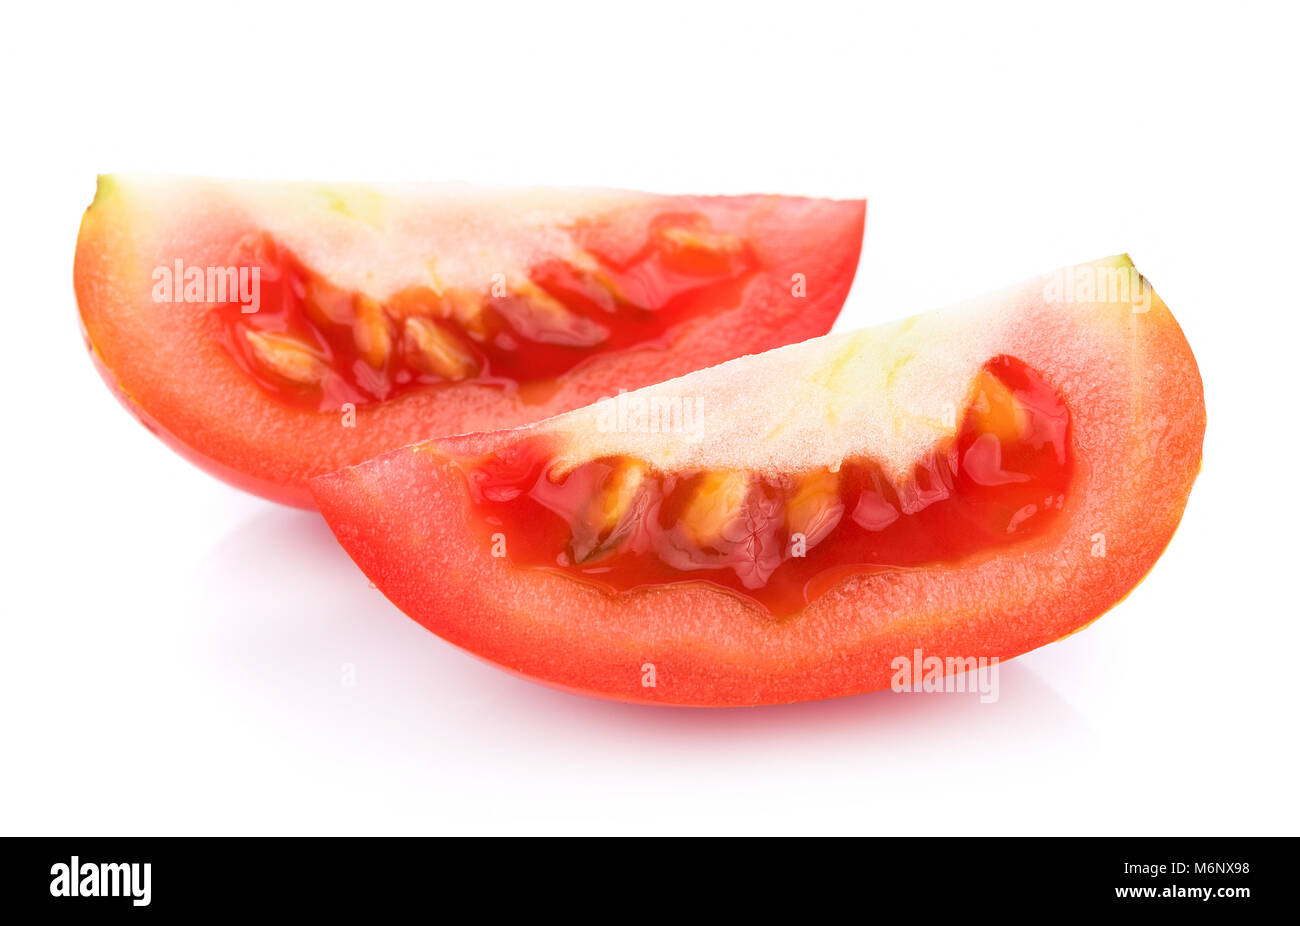 tomato isolated on white background Stock Photo